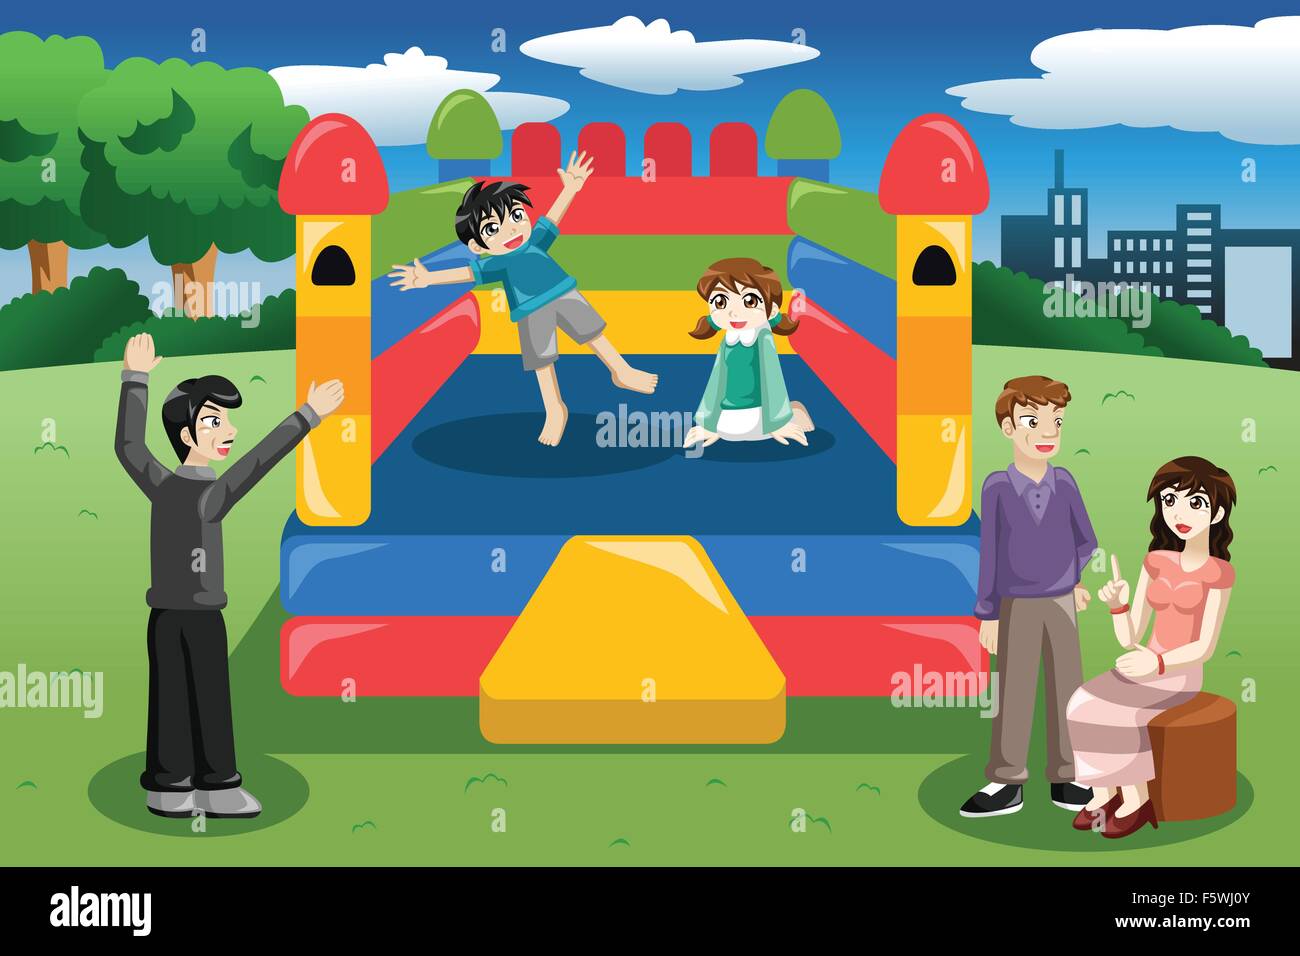 Eine Vektor-Illustration der glückliche Kinder spielen in einer Hüpfburg Haus Stock Vektor